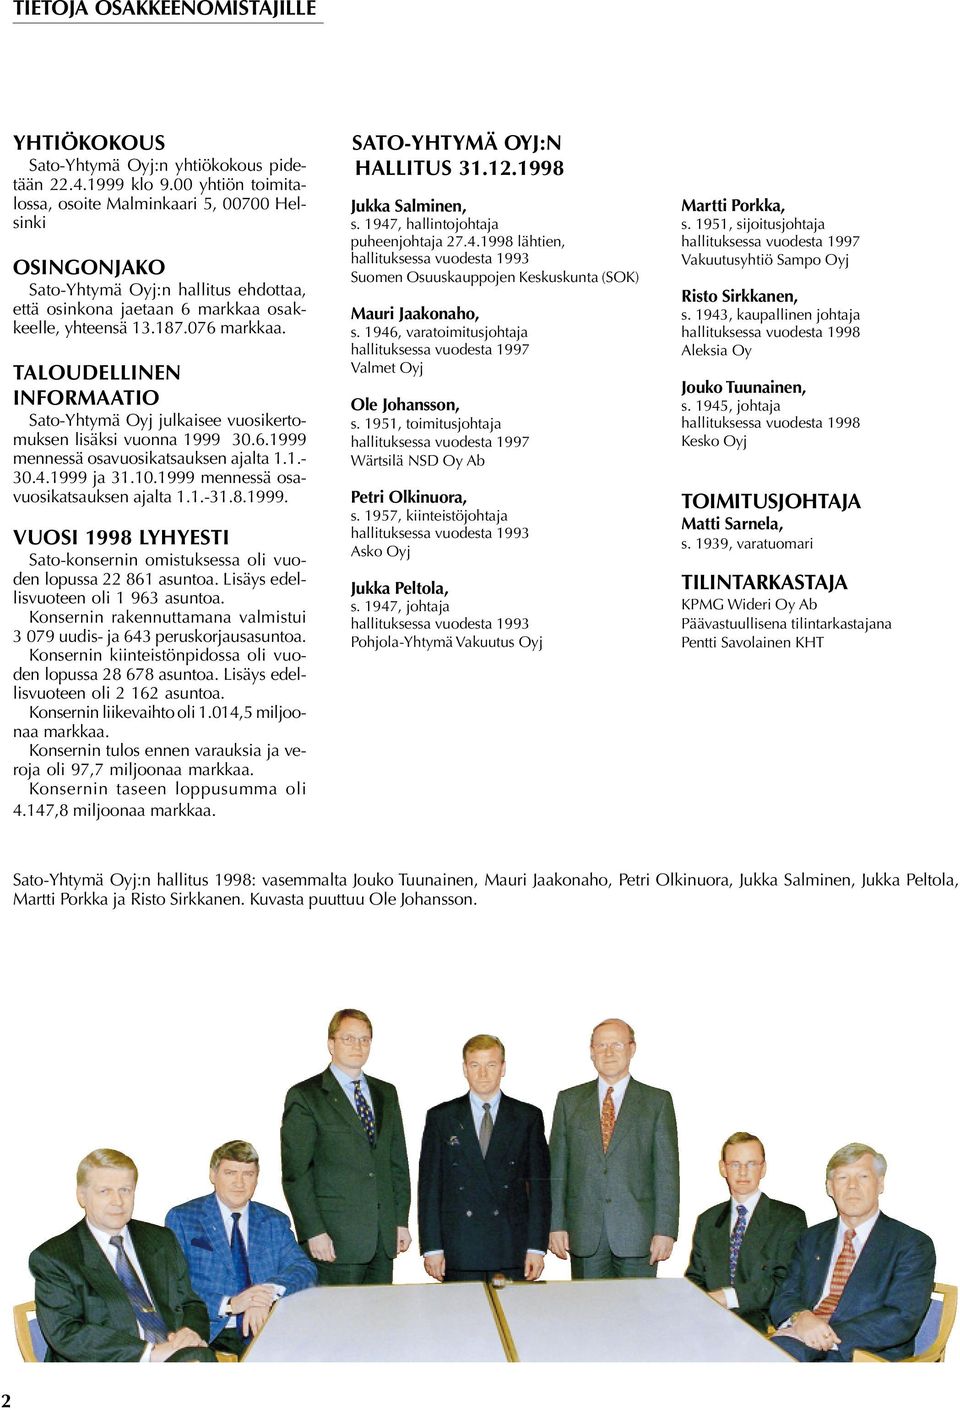 TALOUDELLINEN INFORMAATIO Sato-Yhtymä Oyj julkaisee vuosikertomuksen lisäksi vuonna 1999 30.6.1999 mennessä osavuosikatsauksen ajalta 1.1.- 30.4.1999 ja 31.10.